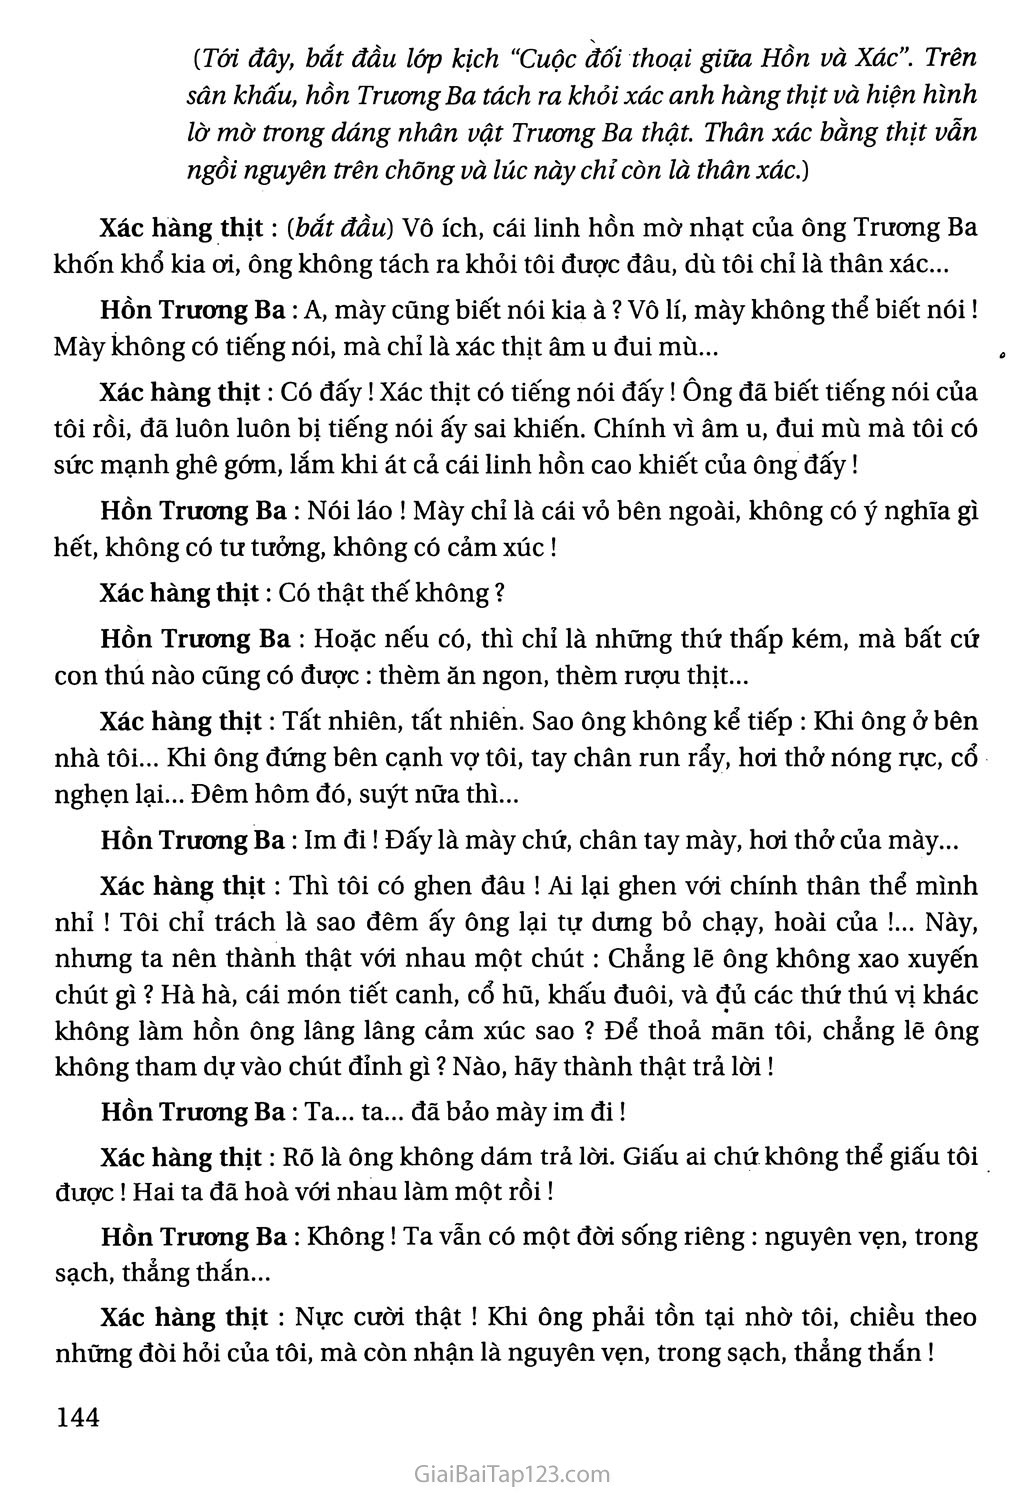 Hồn Trương Ba, da hàng thịt (trích) trang 3